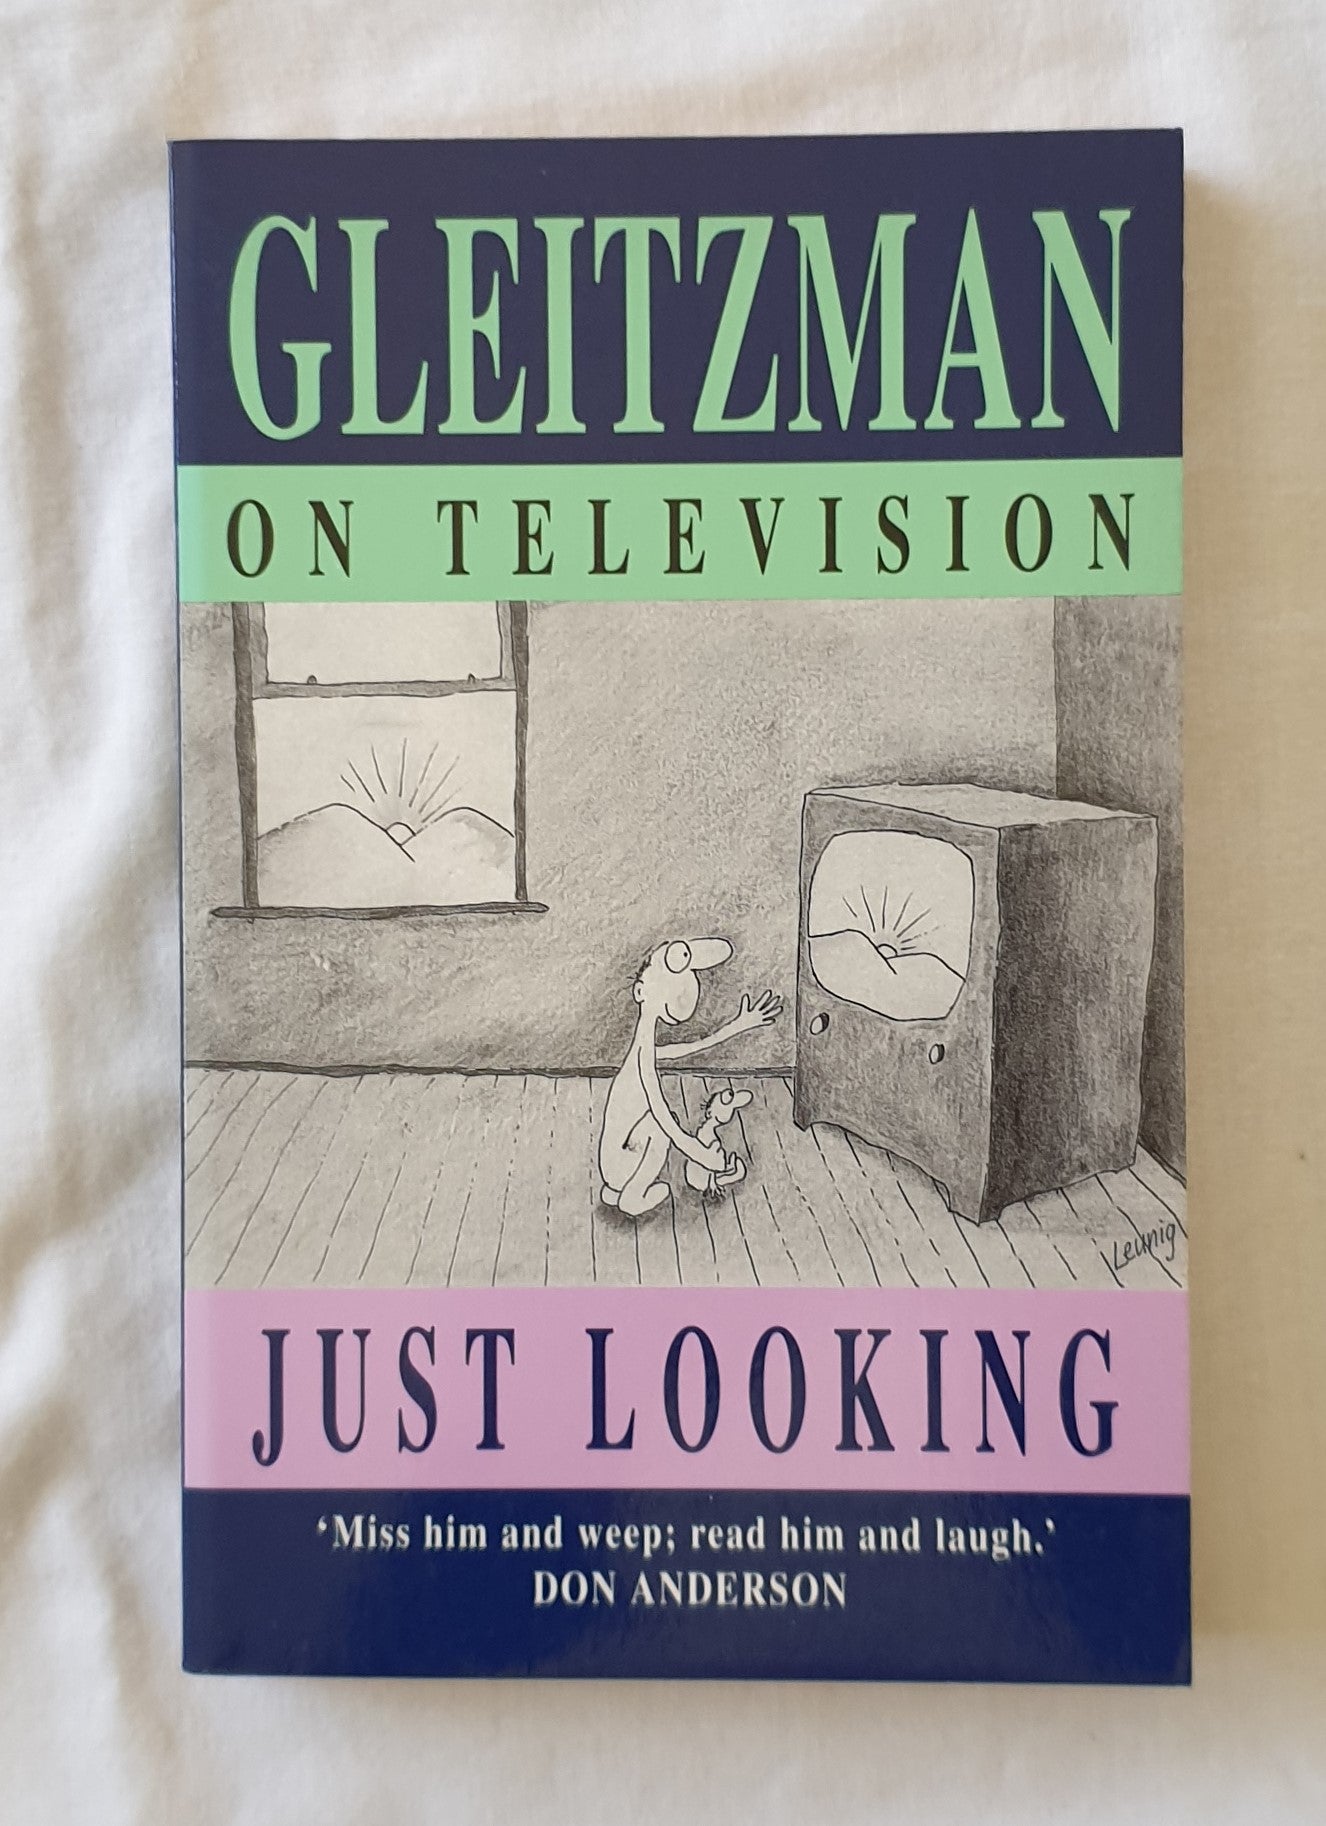 Gleitzman on Television by Morris Gleitzman